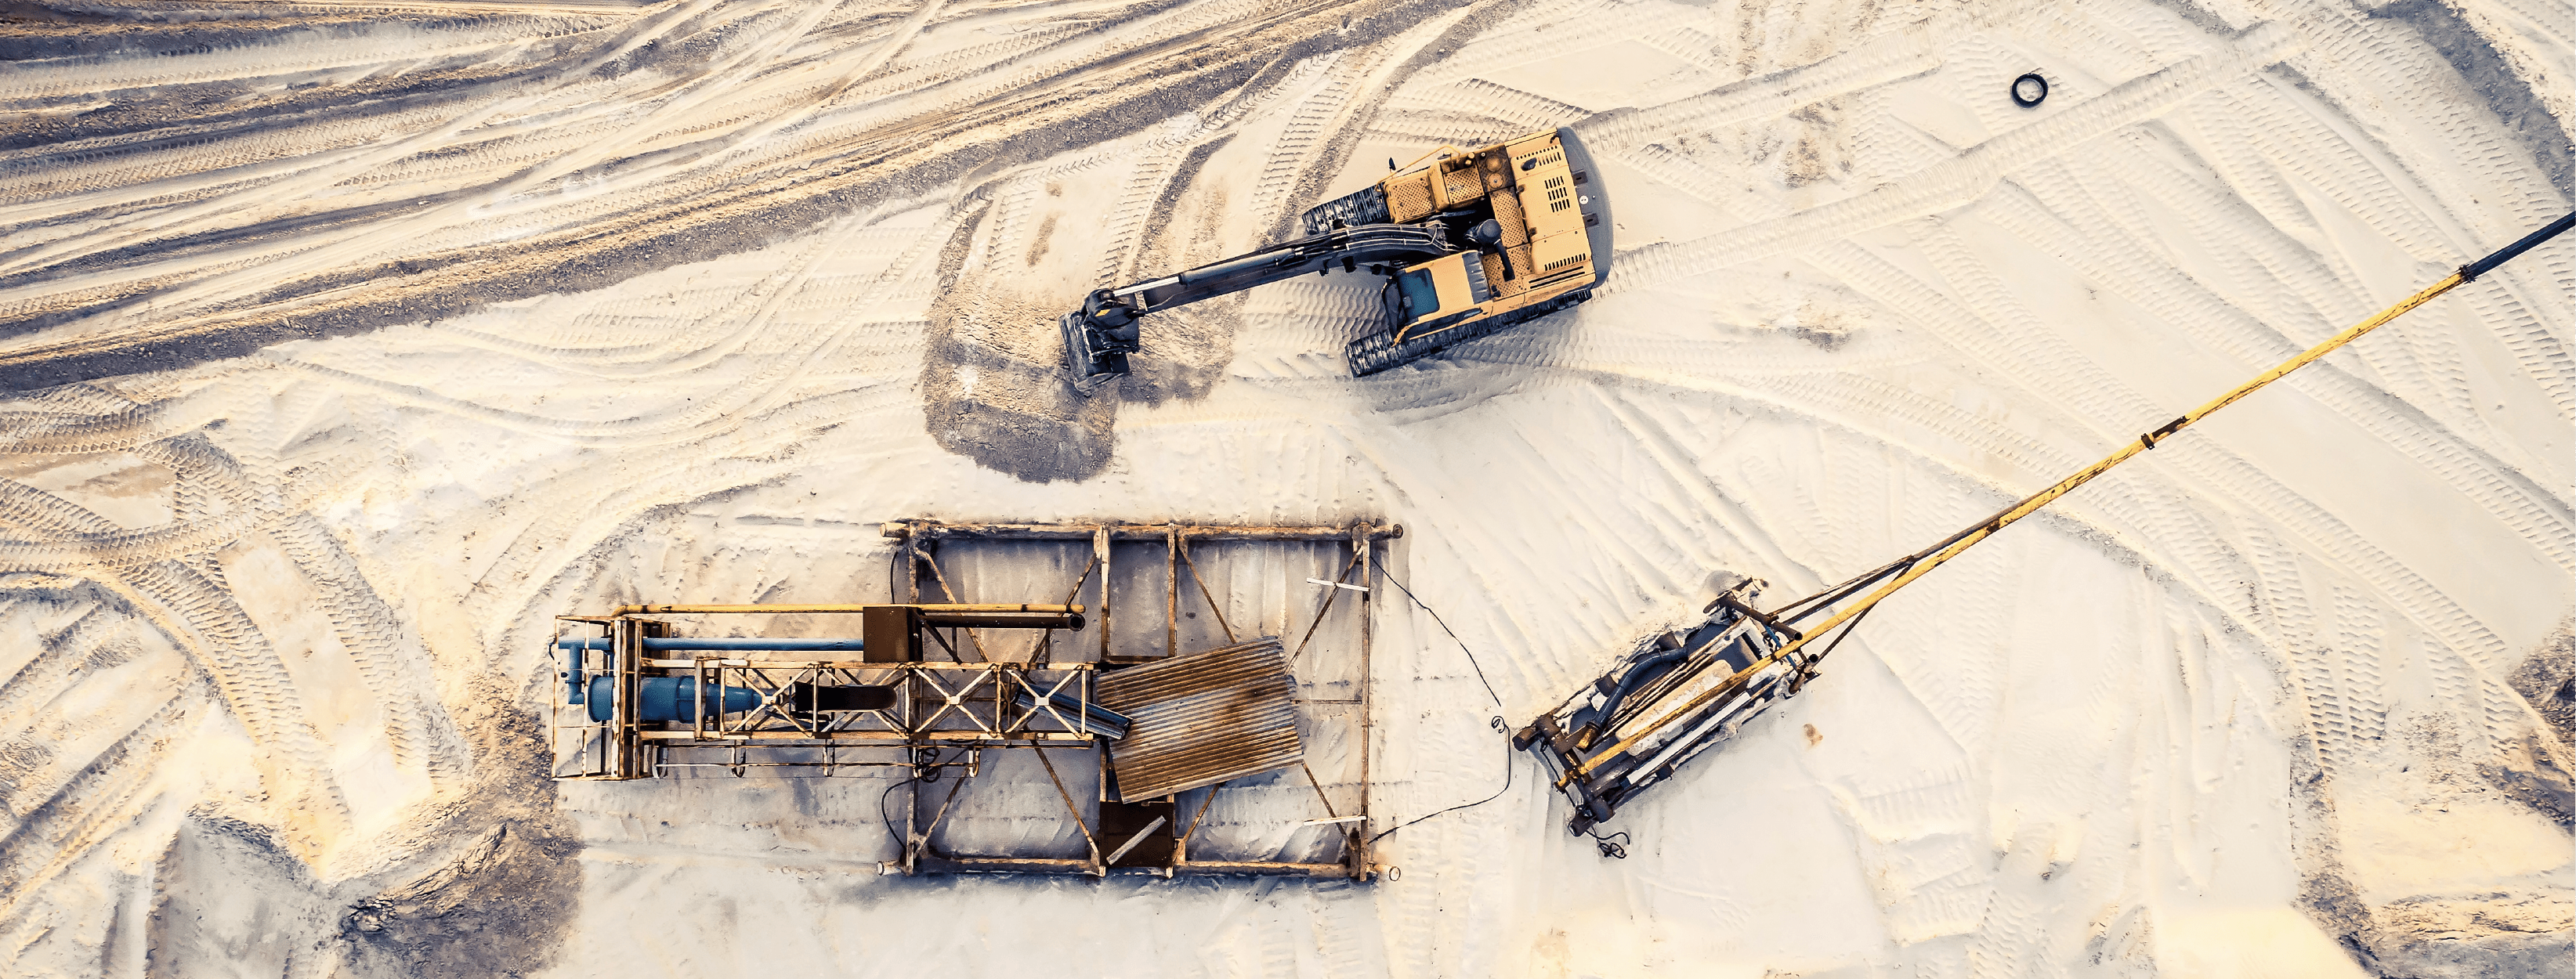 Excavators in a mining site